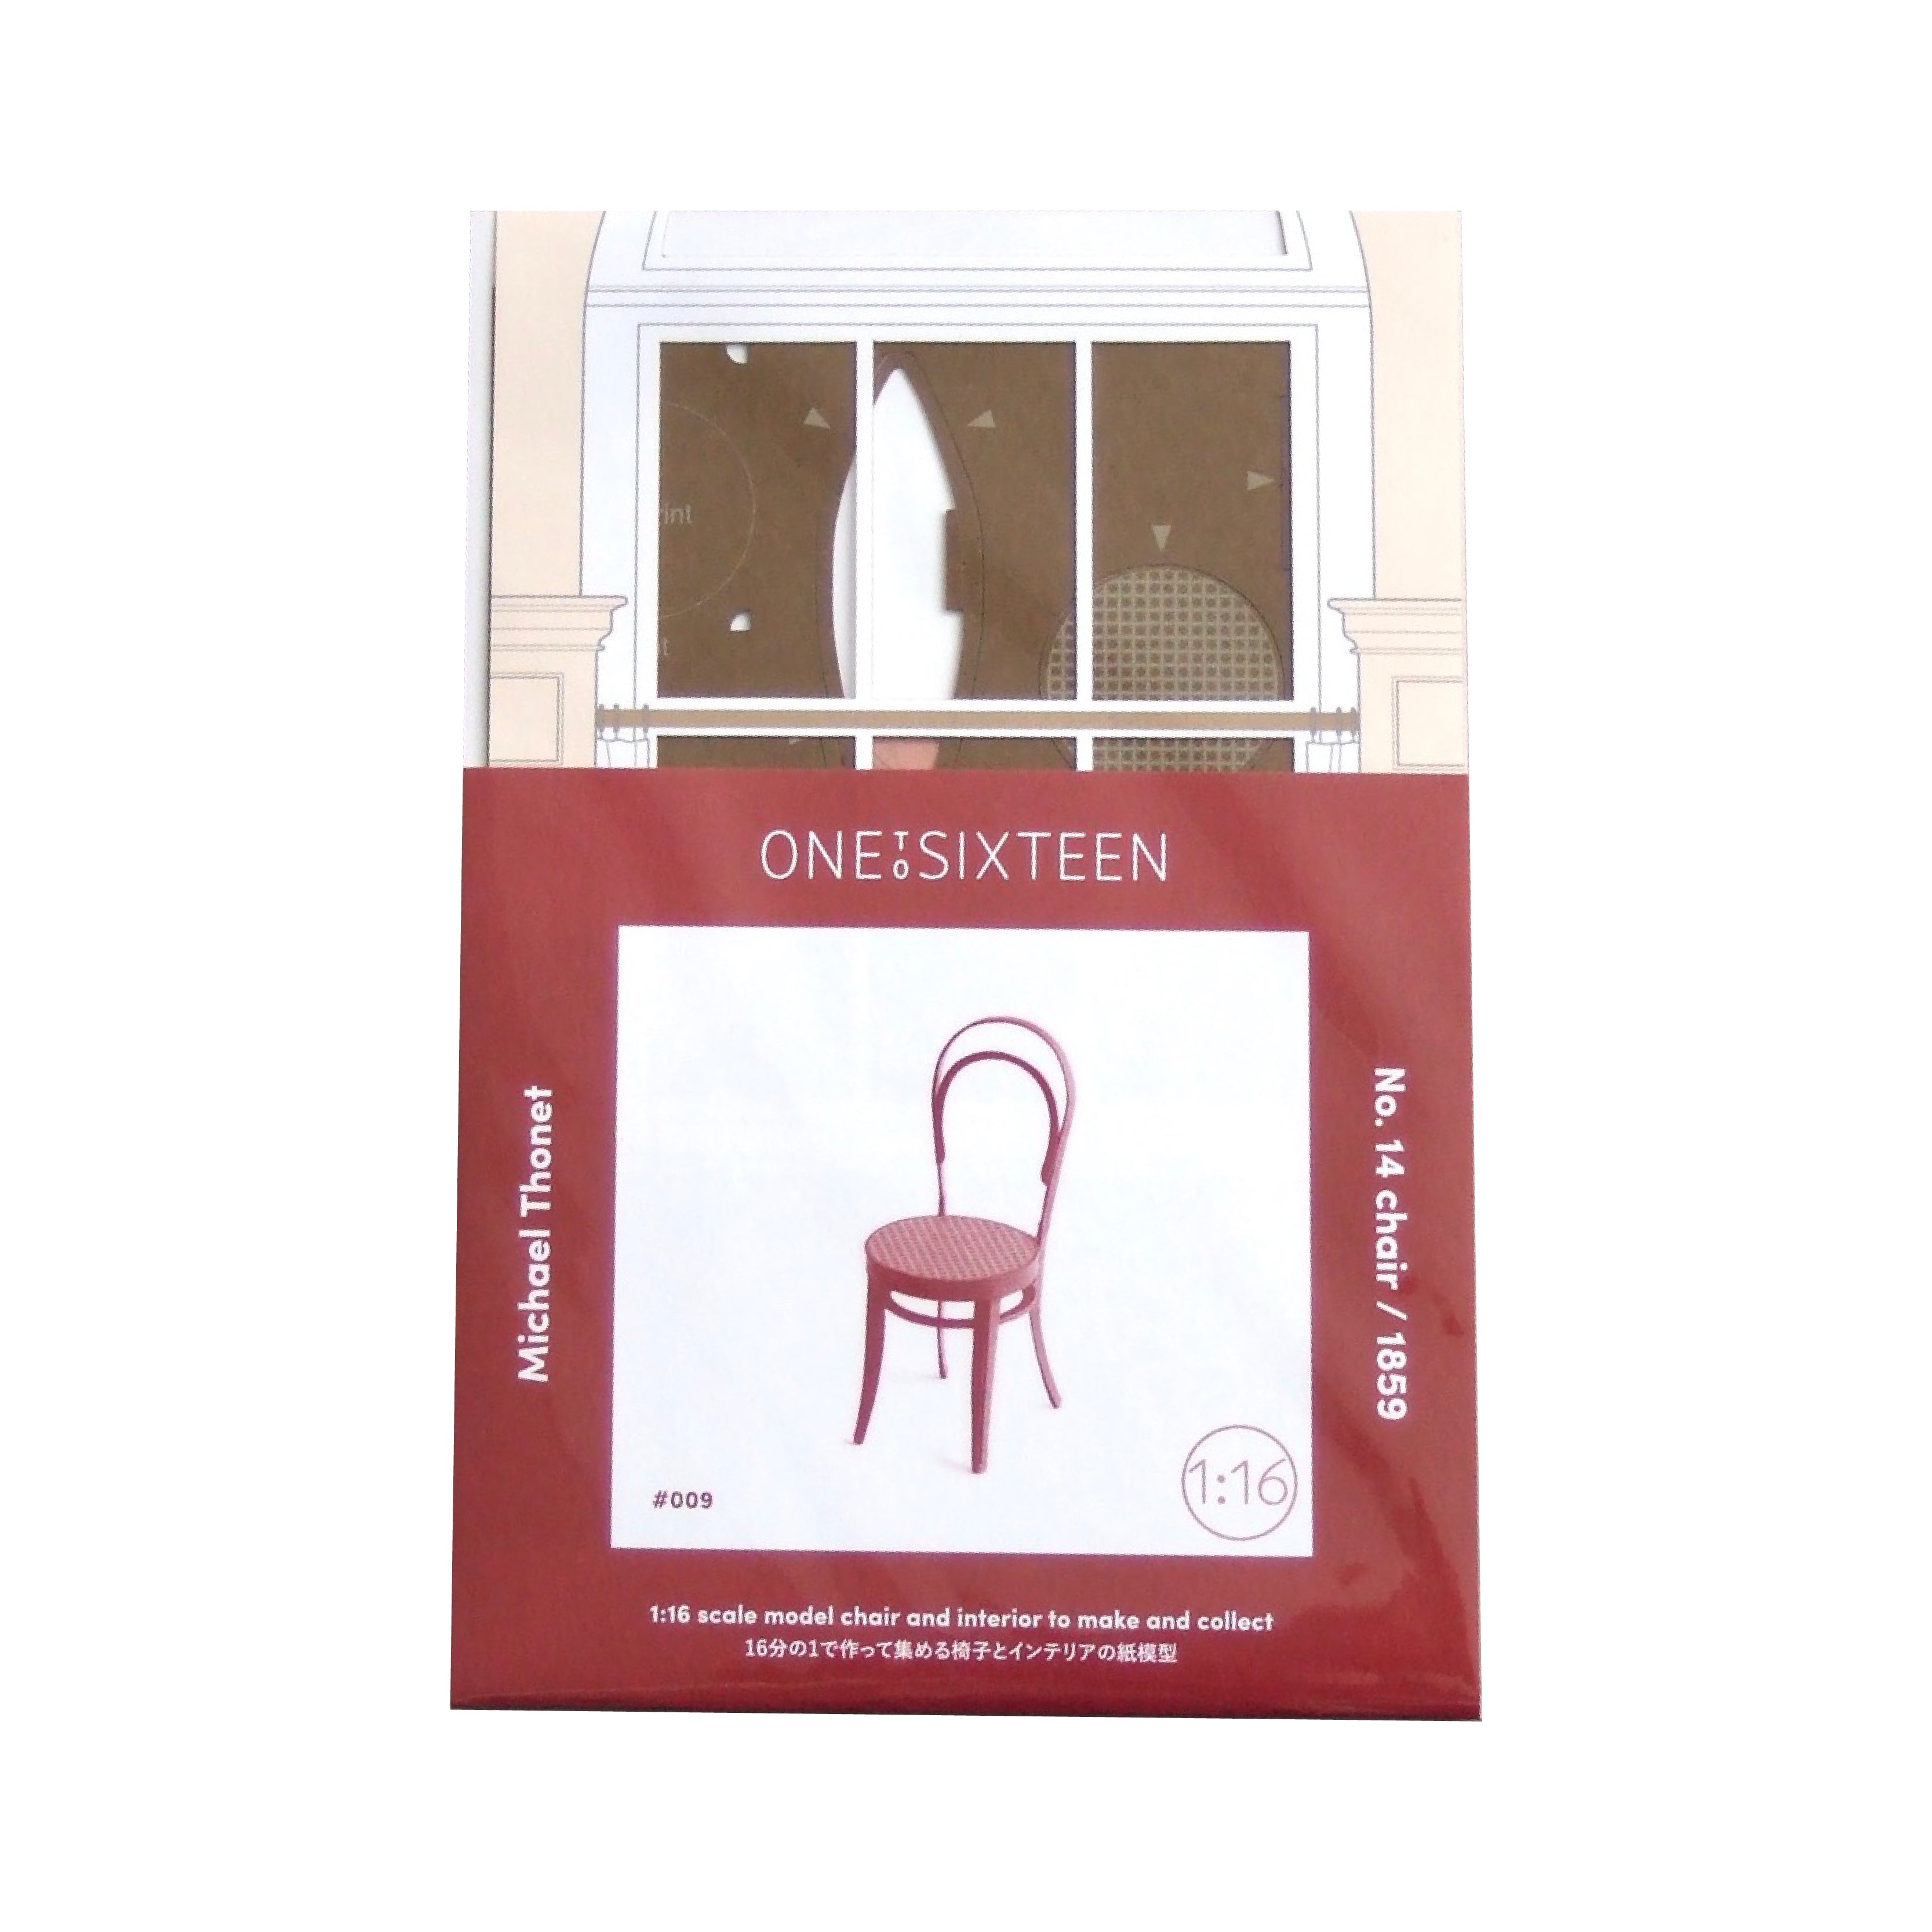 009 Thonet 14 Chair